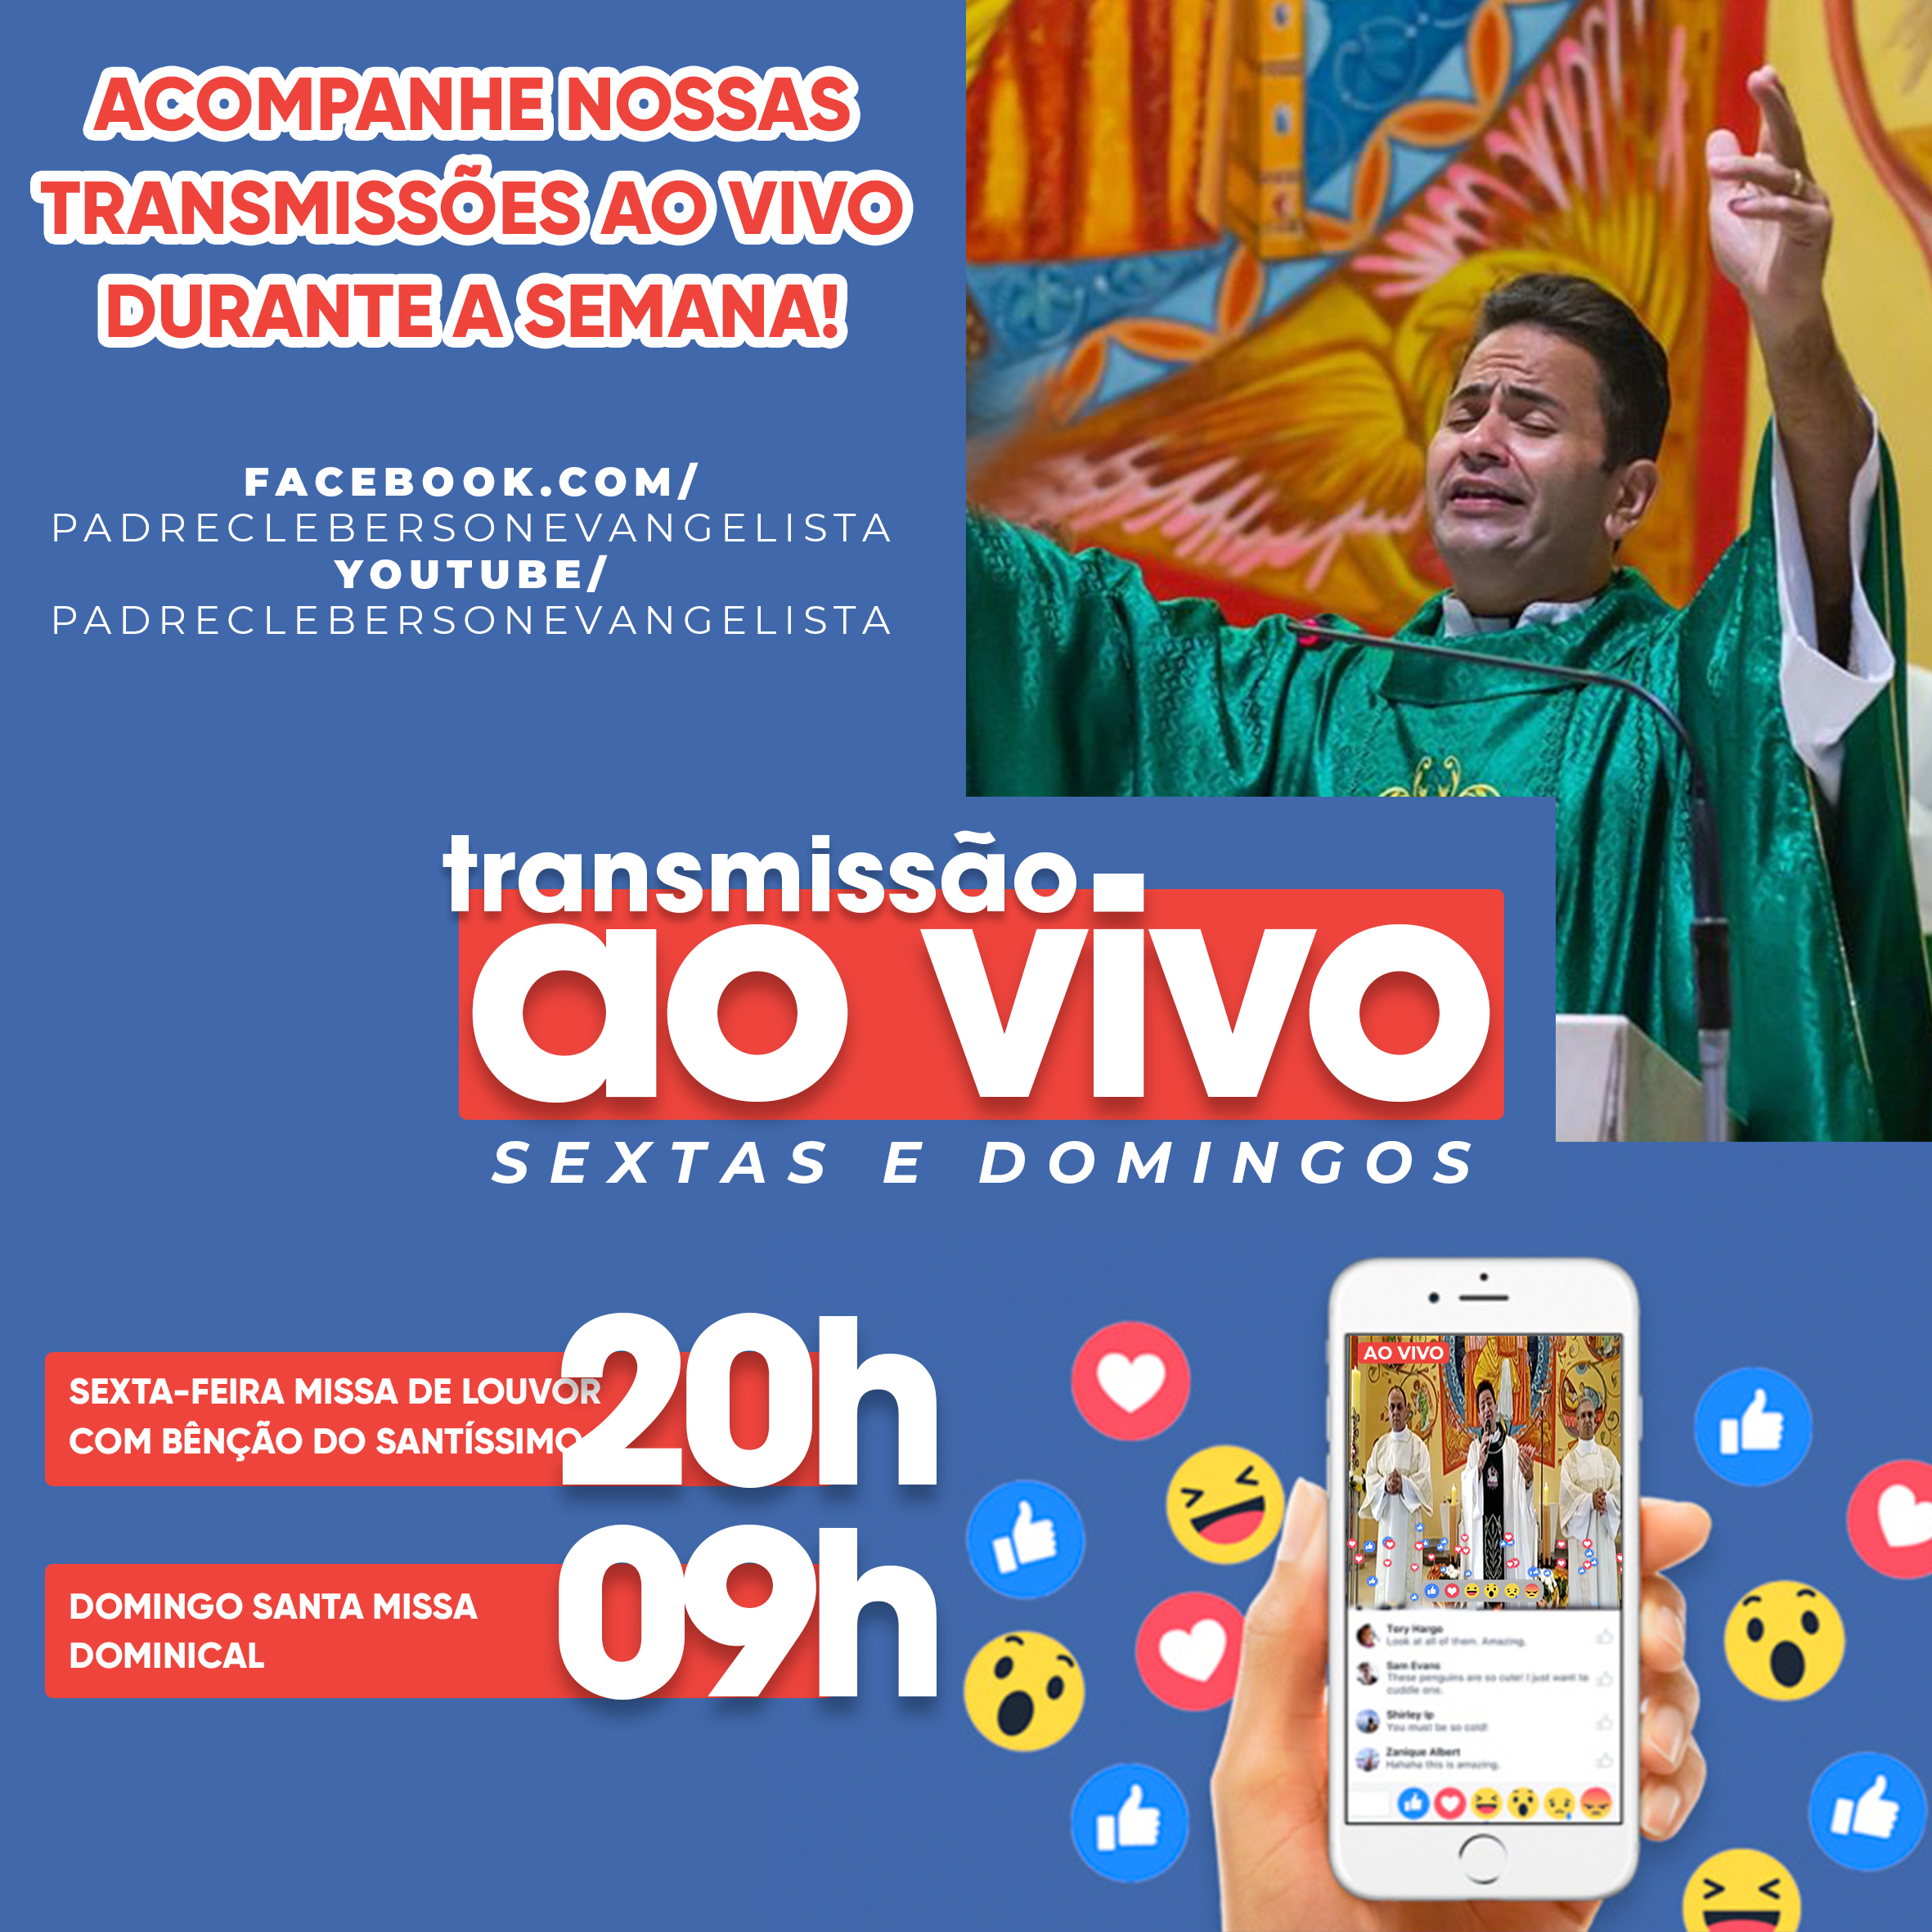 Transmissões ao vivo do na paróquia São Rafael